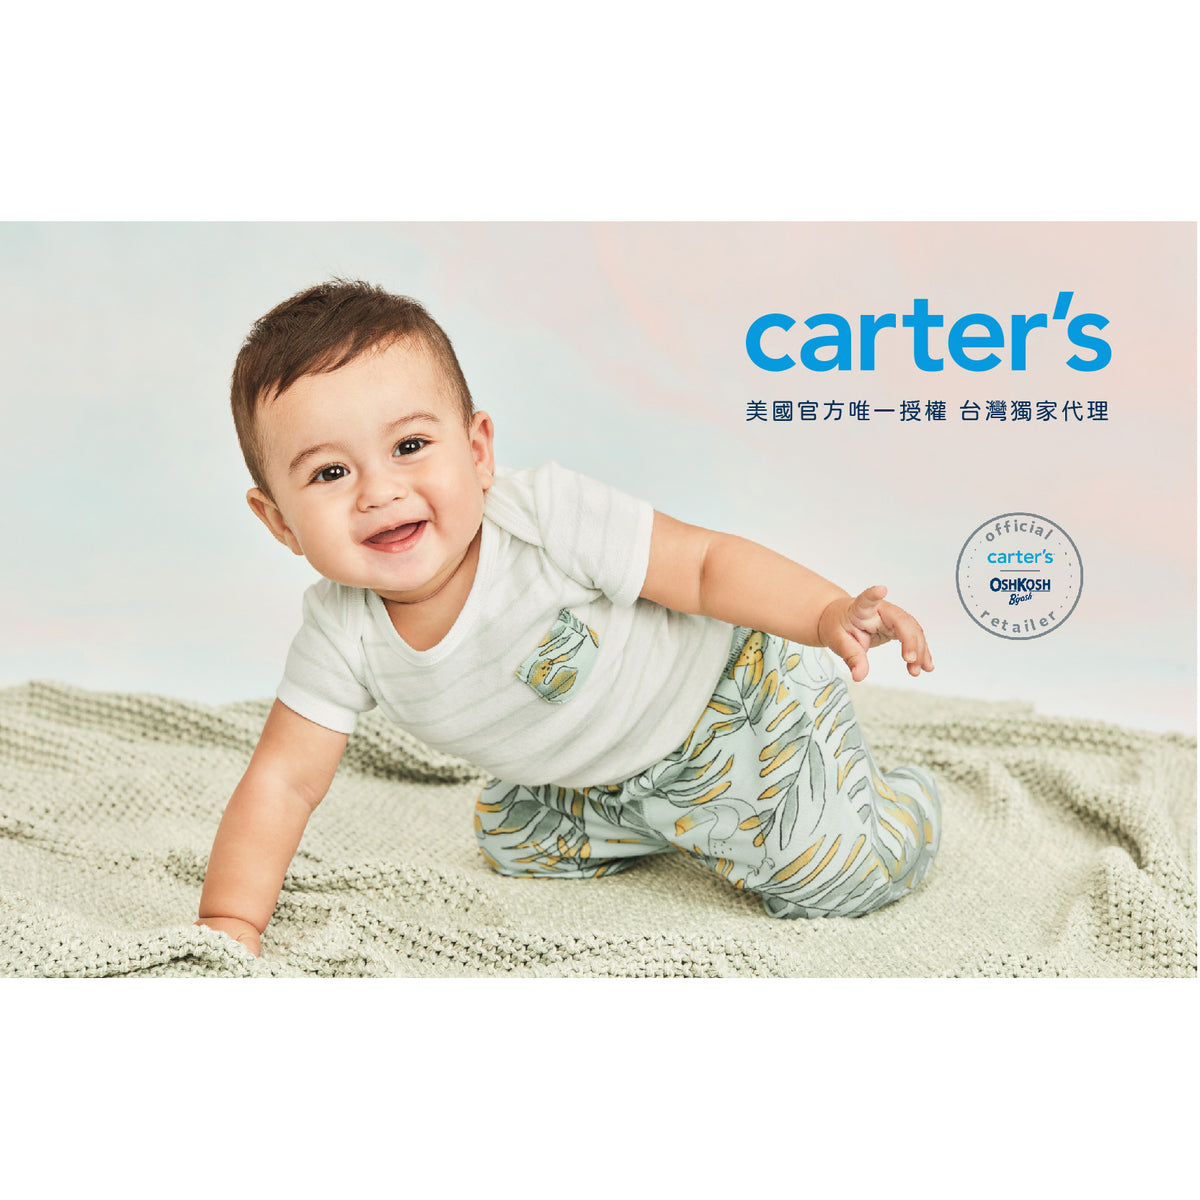 Carter's leisurely sailing shirt (6M-24M)